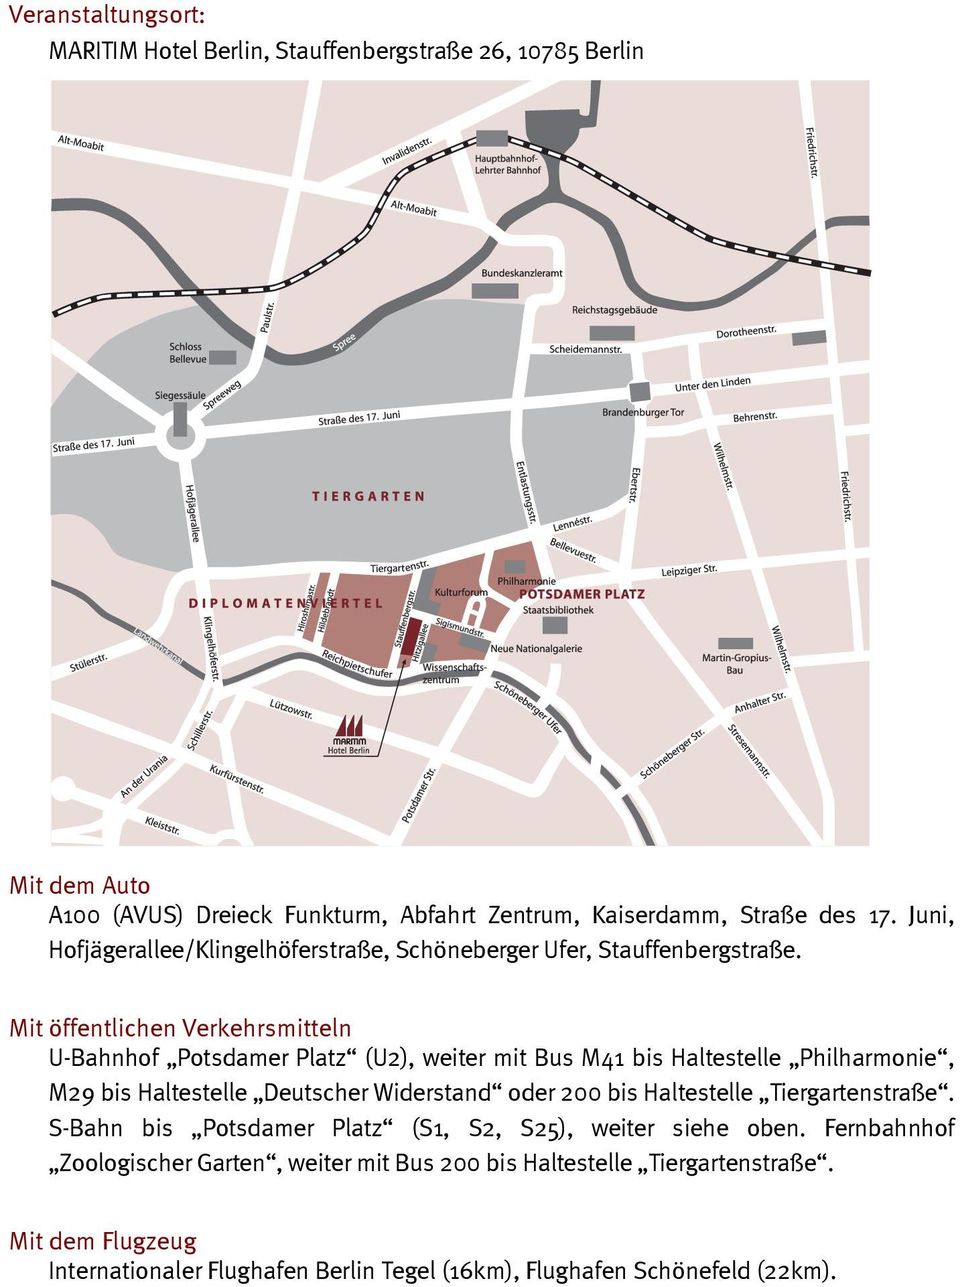 Mit öffentlichen Verkehrsmitteln U-Bahnhof Potsdamer Platz (U2), weiter mit Bus M41 bis Haltestelle Philharmonie, M29 bis Haltestelle Deutscher Widerstand oder 200 bis